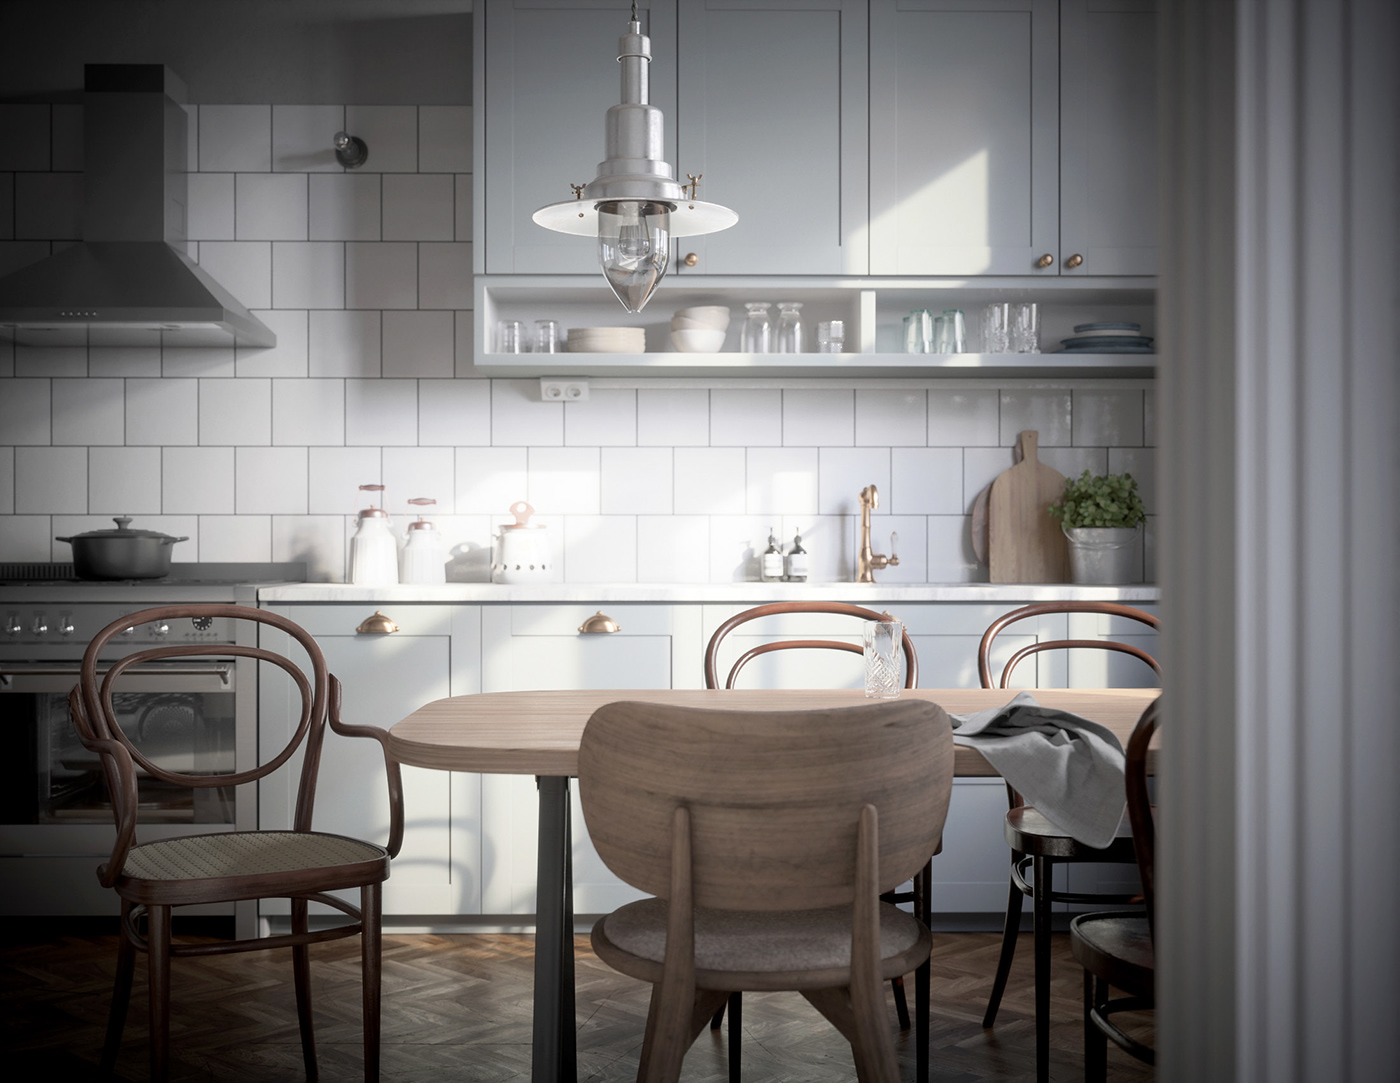 3D 3DArtist 3dsmax archviz FStorm interior design  kitchen photoshop Render Scandinavian